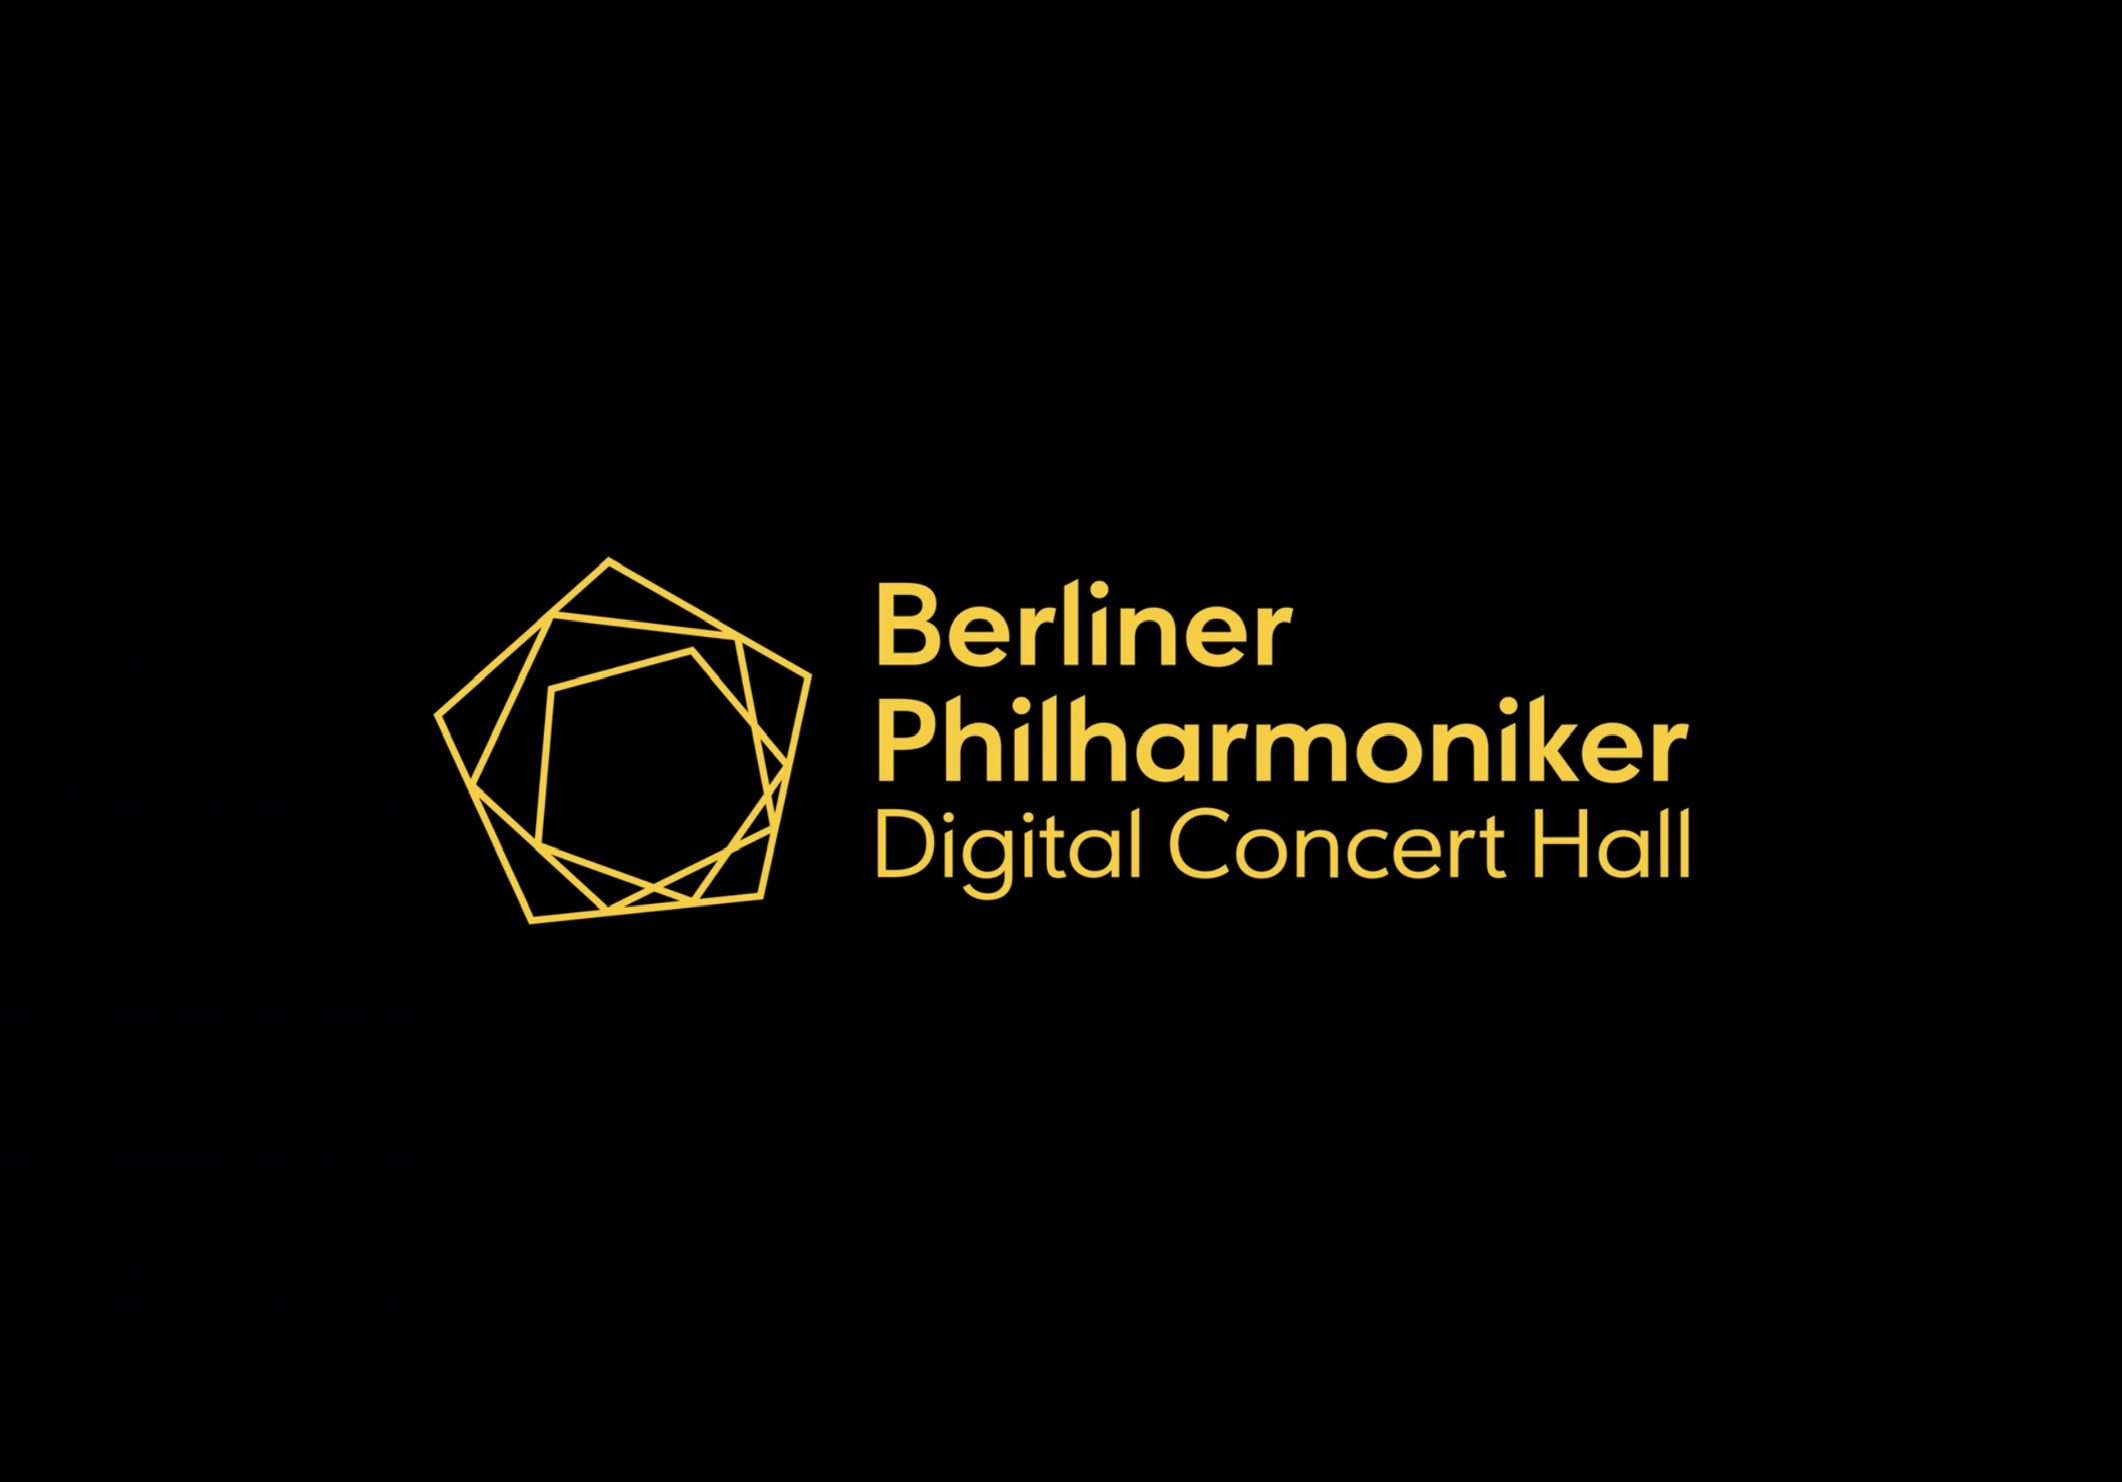 Berliner Philharmoniker's Digital Concert Hall - opening screen